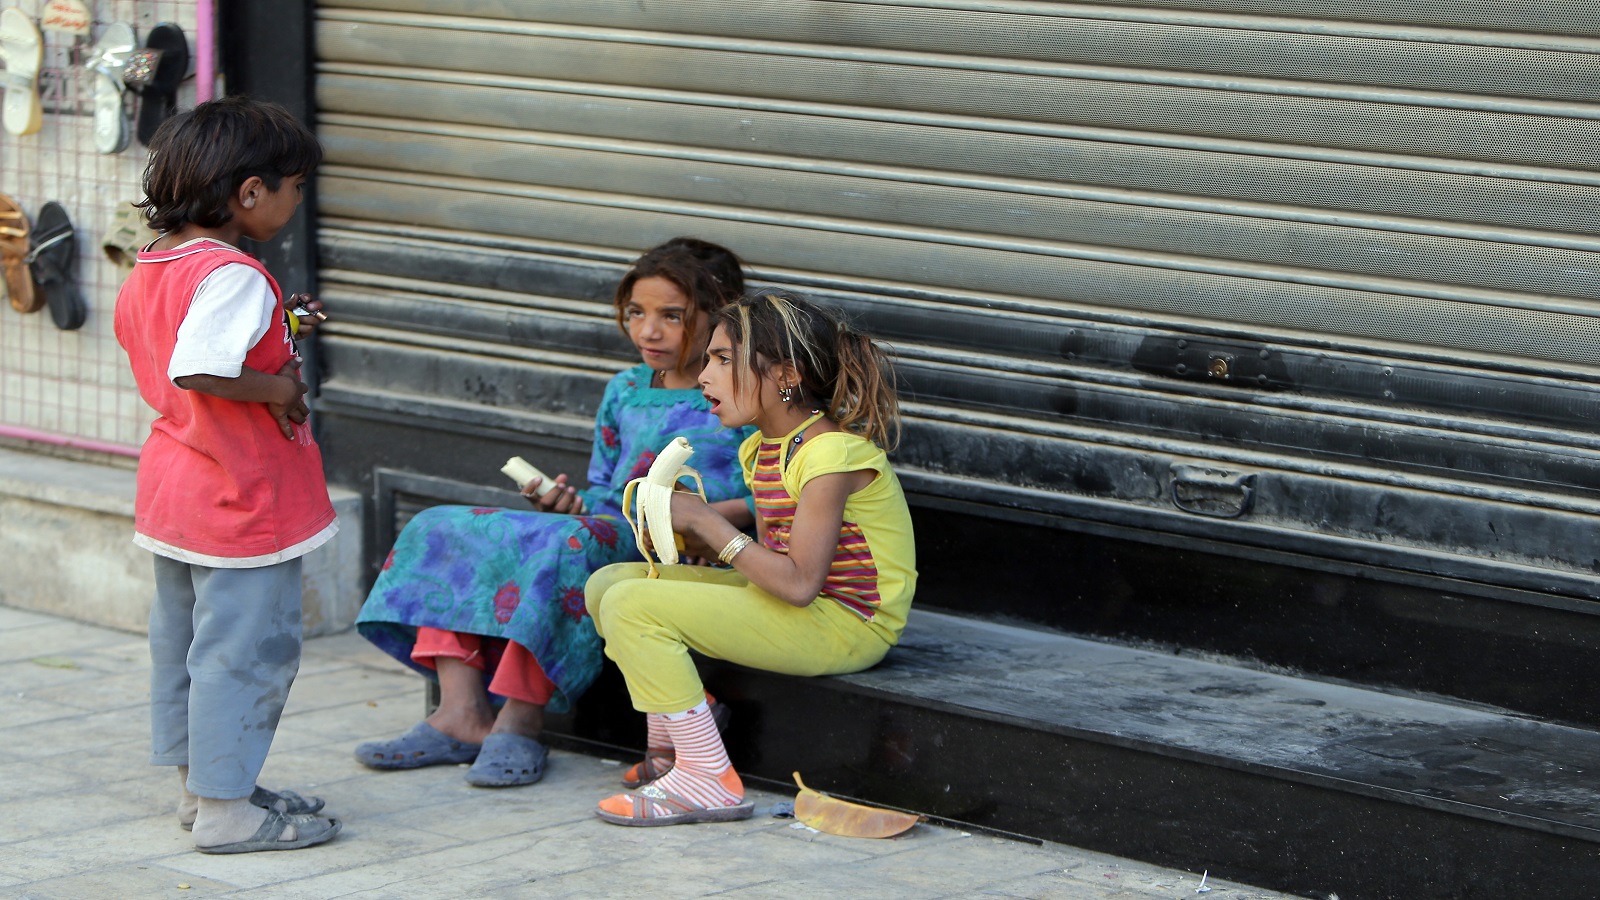 دمشق:عائلات مستورة تواجه الفقر بالتسول